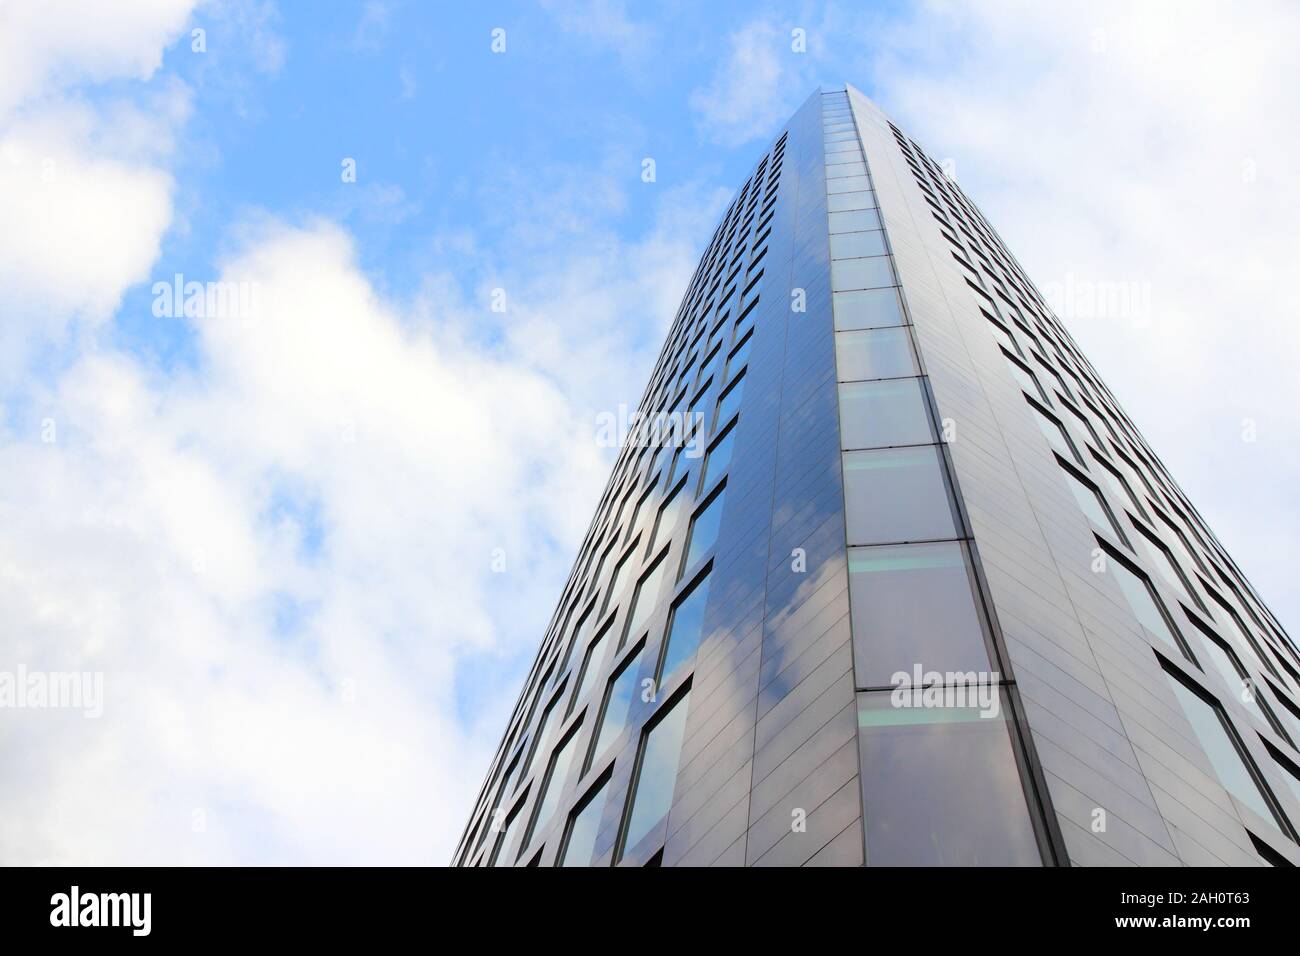 DORTMUND, Deutschland - 15. JULI 2012: RWE-Turm in Dortmund, Deutschland. Die 89 m hohe Gebäude ist das höchste Hochhaus in Dortmund. Stockfoto